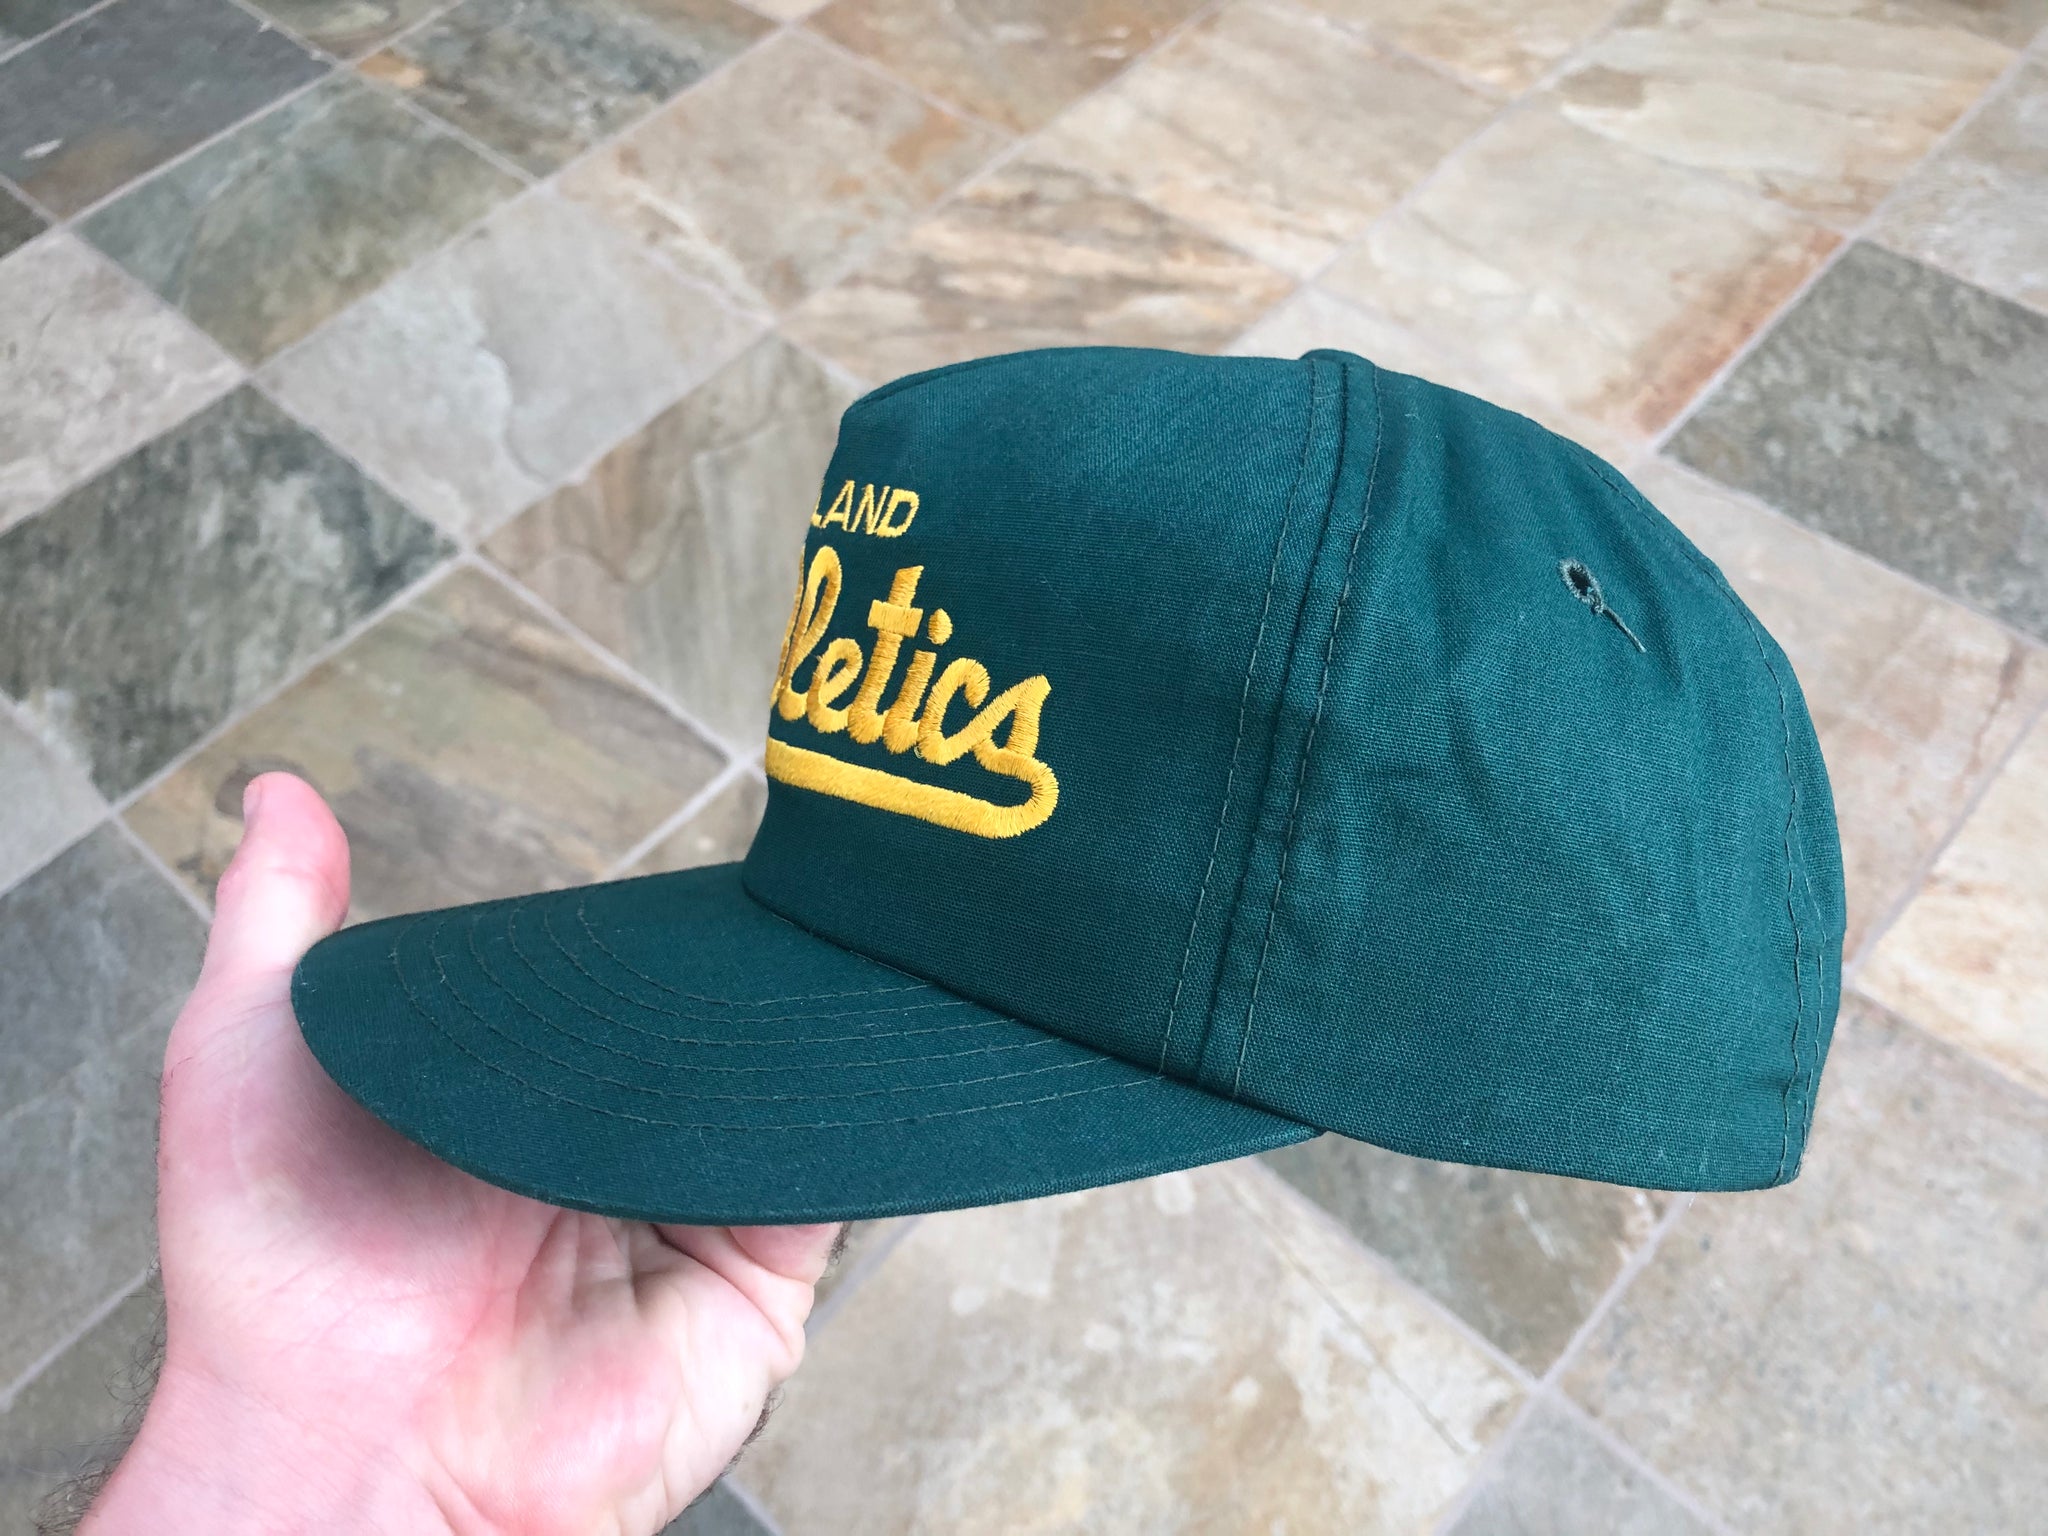 Oakland ATHLETICS Original Vintage 90s Snapback Hat Official